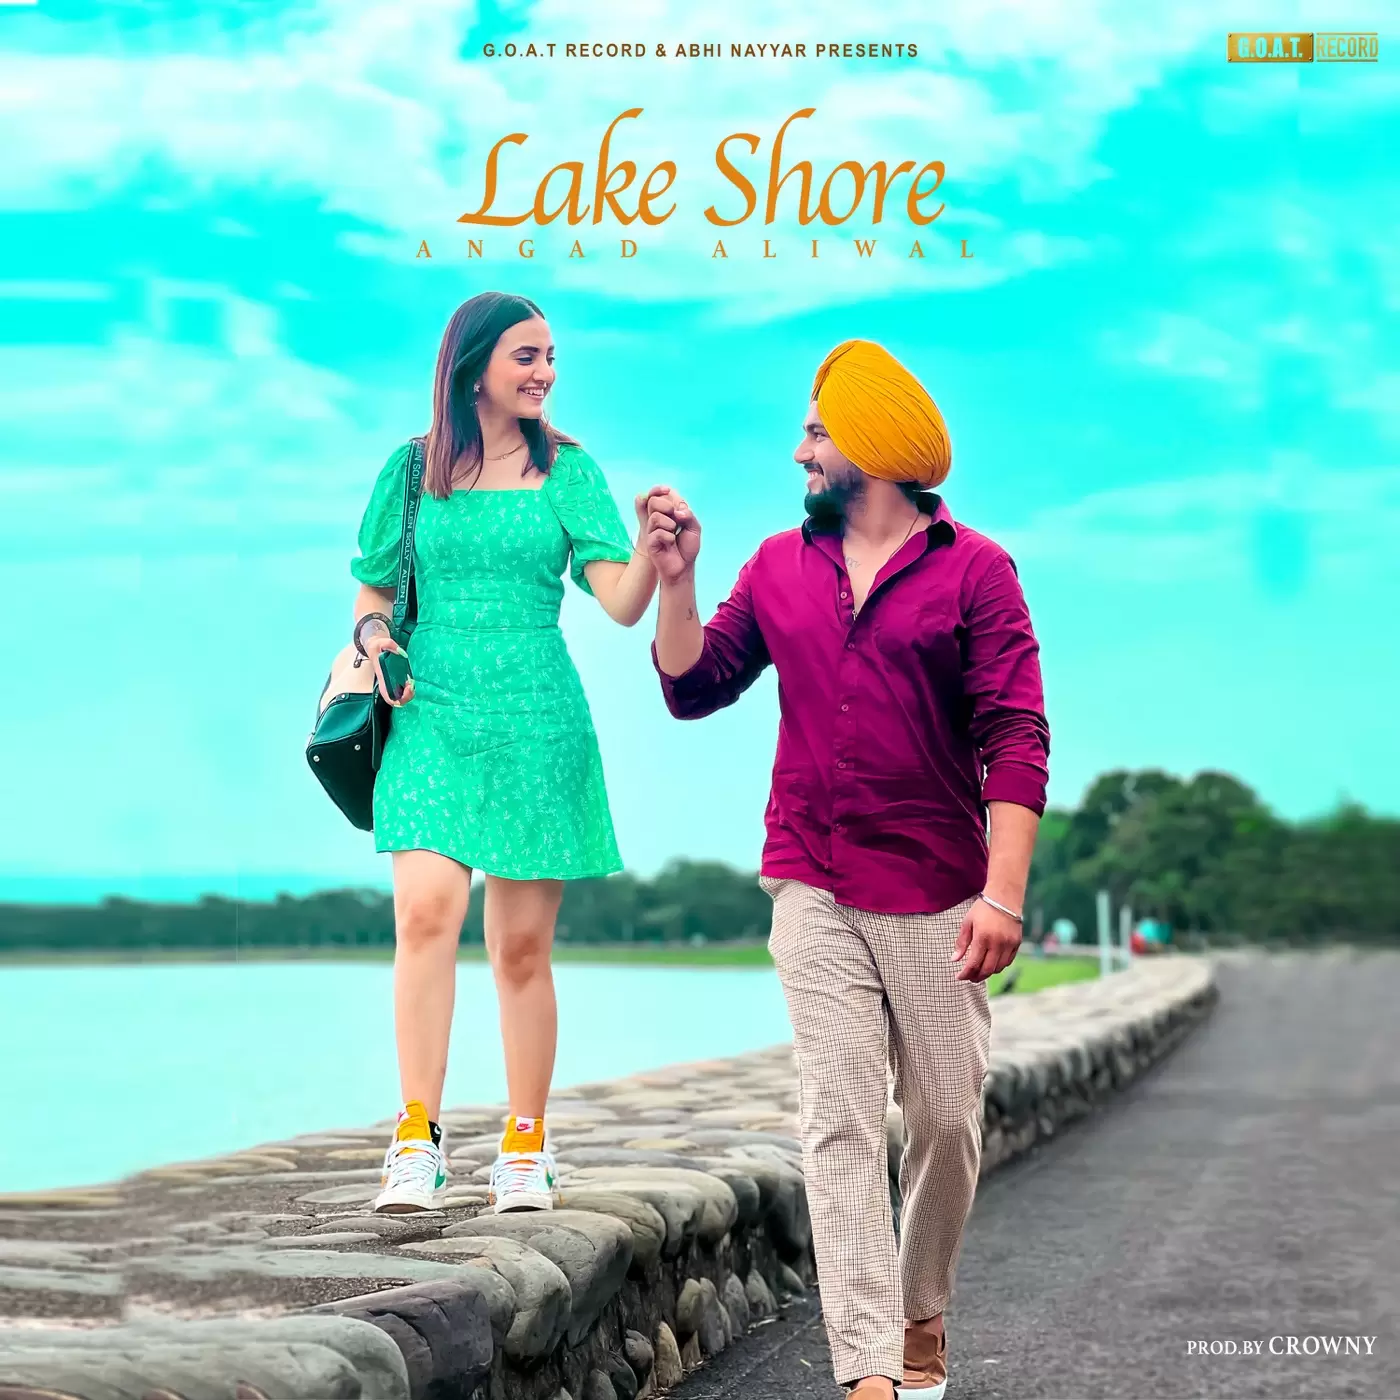 Lake Shore Angad Aliwal Mp3 Download Song - Mr-Punjab